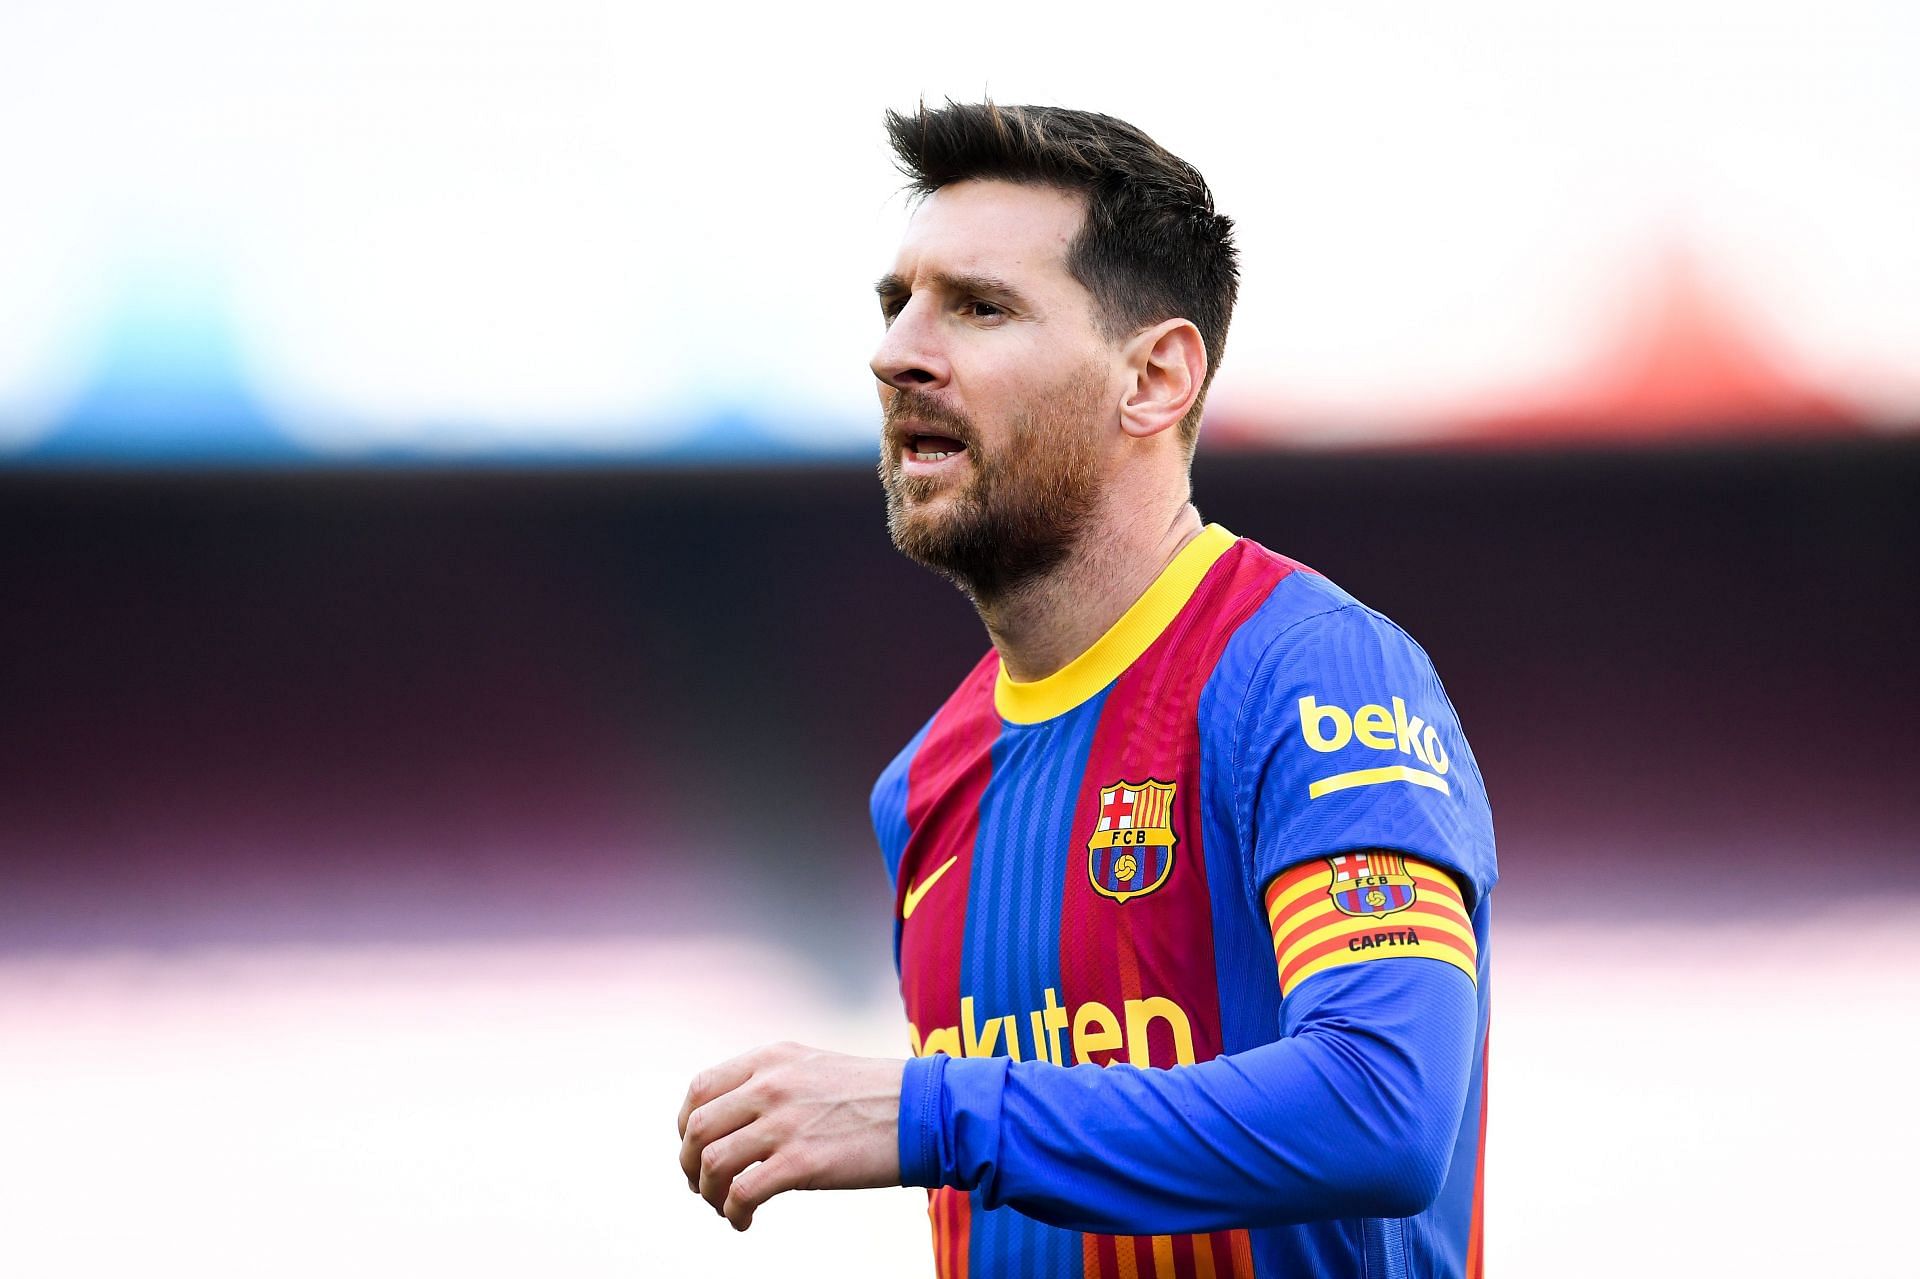 &lt;a href=&#039;https://www.sportskeeda.com/player/lionel-messi&#039; target=&#039;_blank&#039; rel=&#039;noopener noreferrer&#039;&gt;Lionel Messi&lt;/a&gt; for Barcelona (via Getty Images)